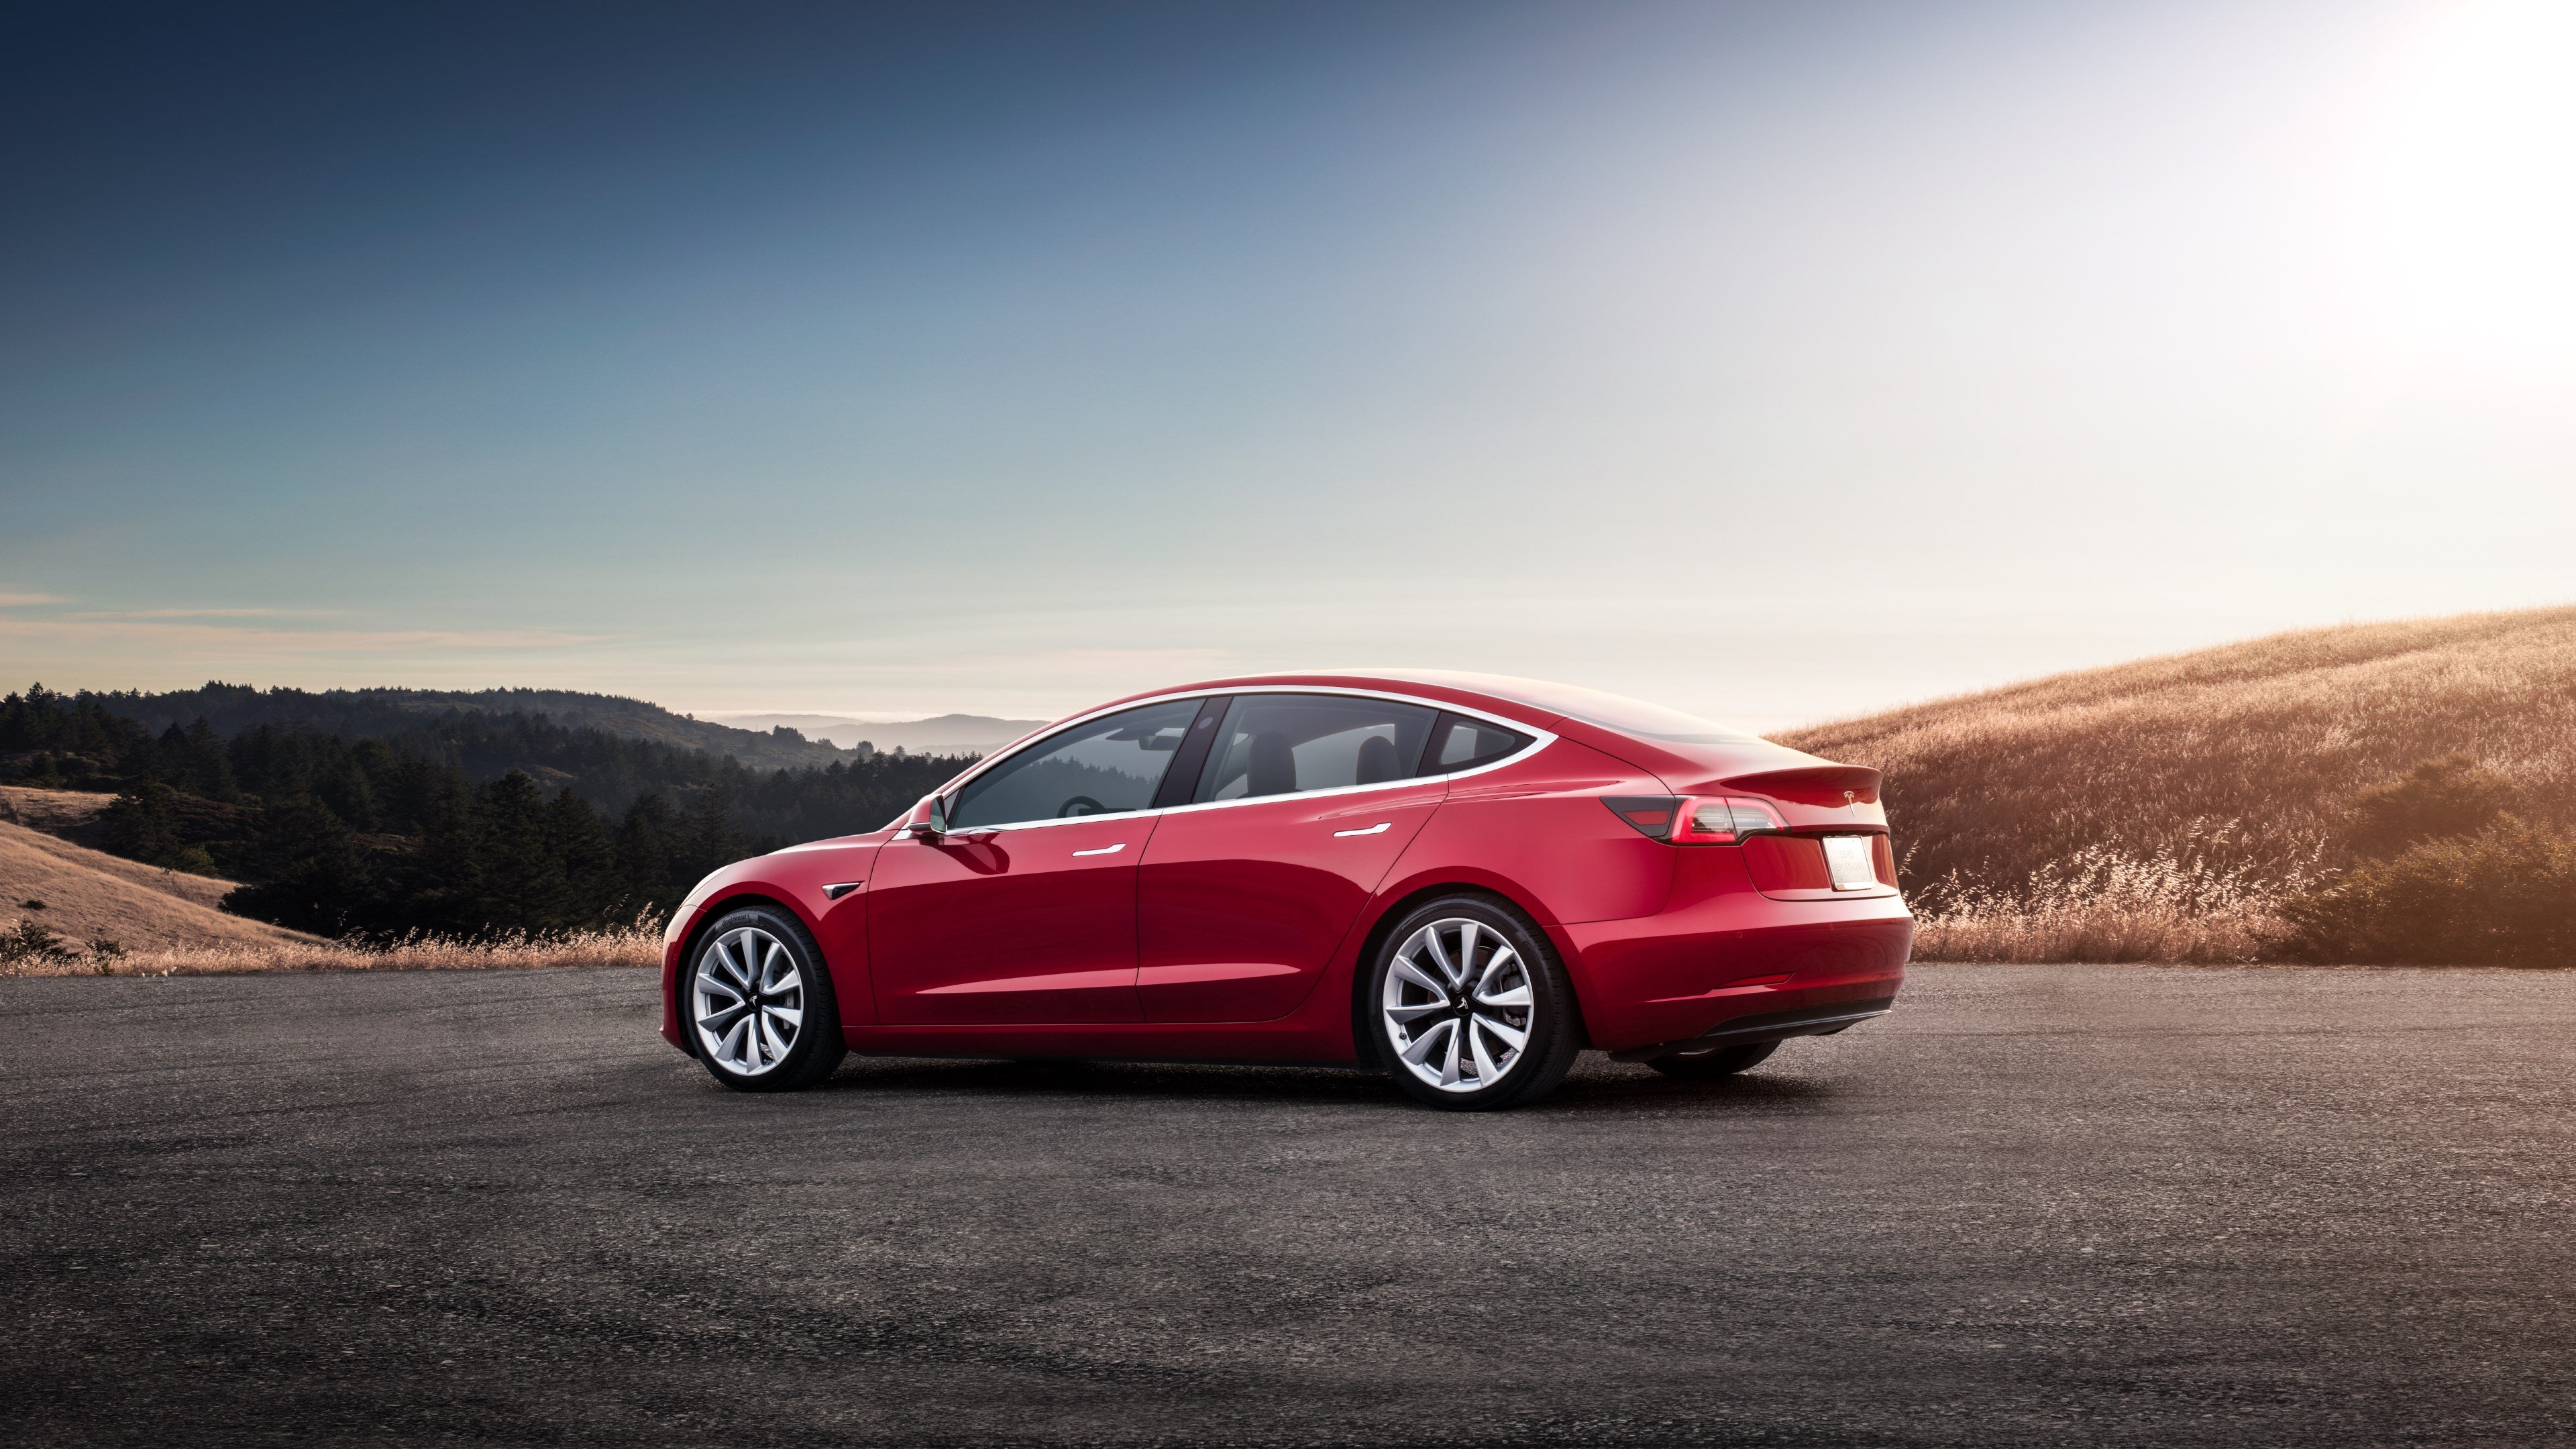 Tesla Model 3 Highland: Großes Facelift schon in Produktion? -  Elektromobilität (E-Mobilität), Unternehmens-, Wirtschaft- und  Branchen-Nachrichten (sonst.), News, Unterwegs auf der Autobahn - Reisen, Rasten, Tanken, Shoppen, Erholen